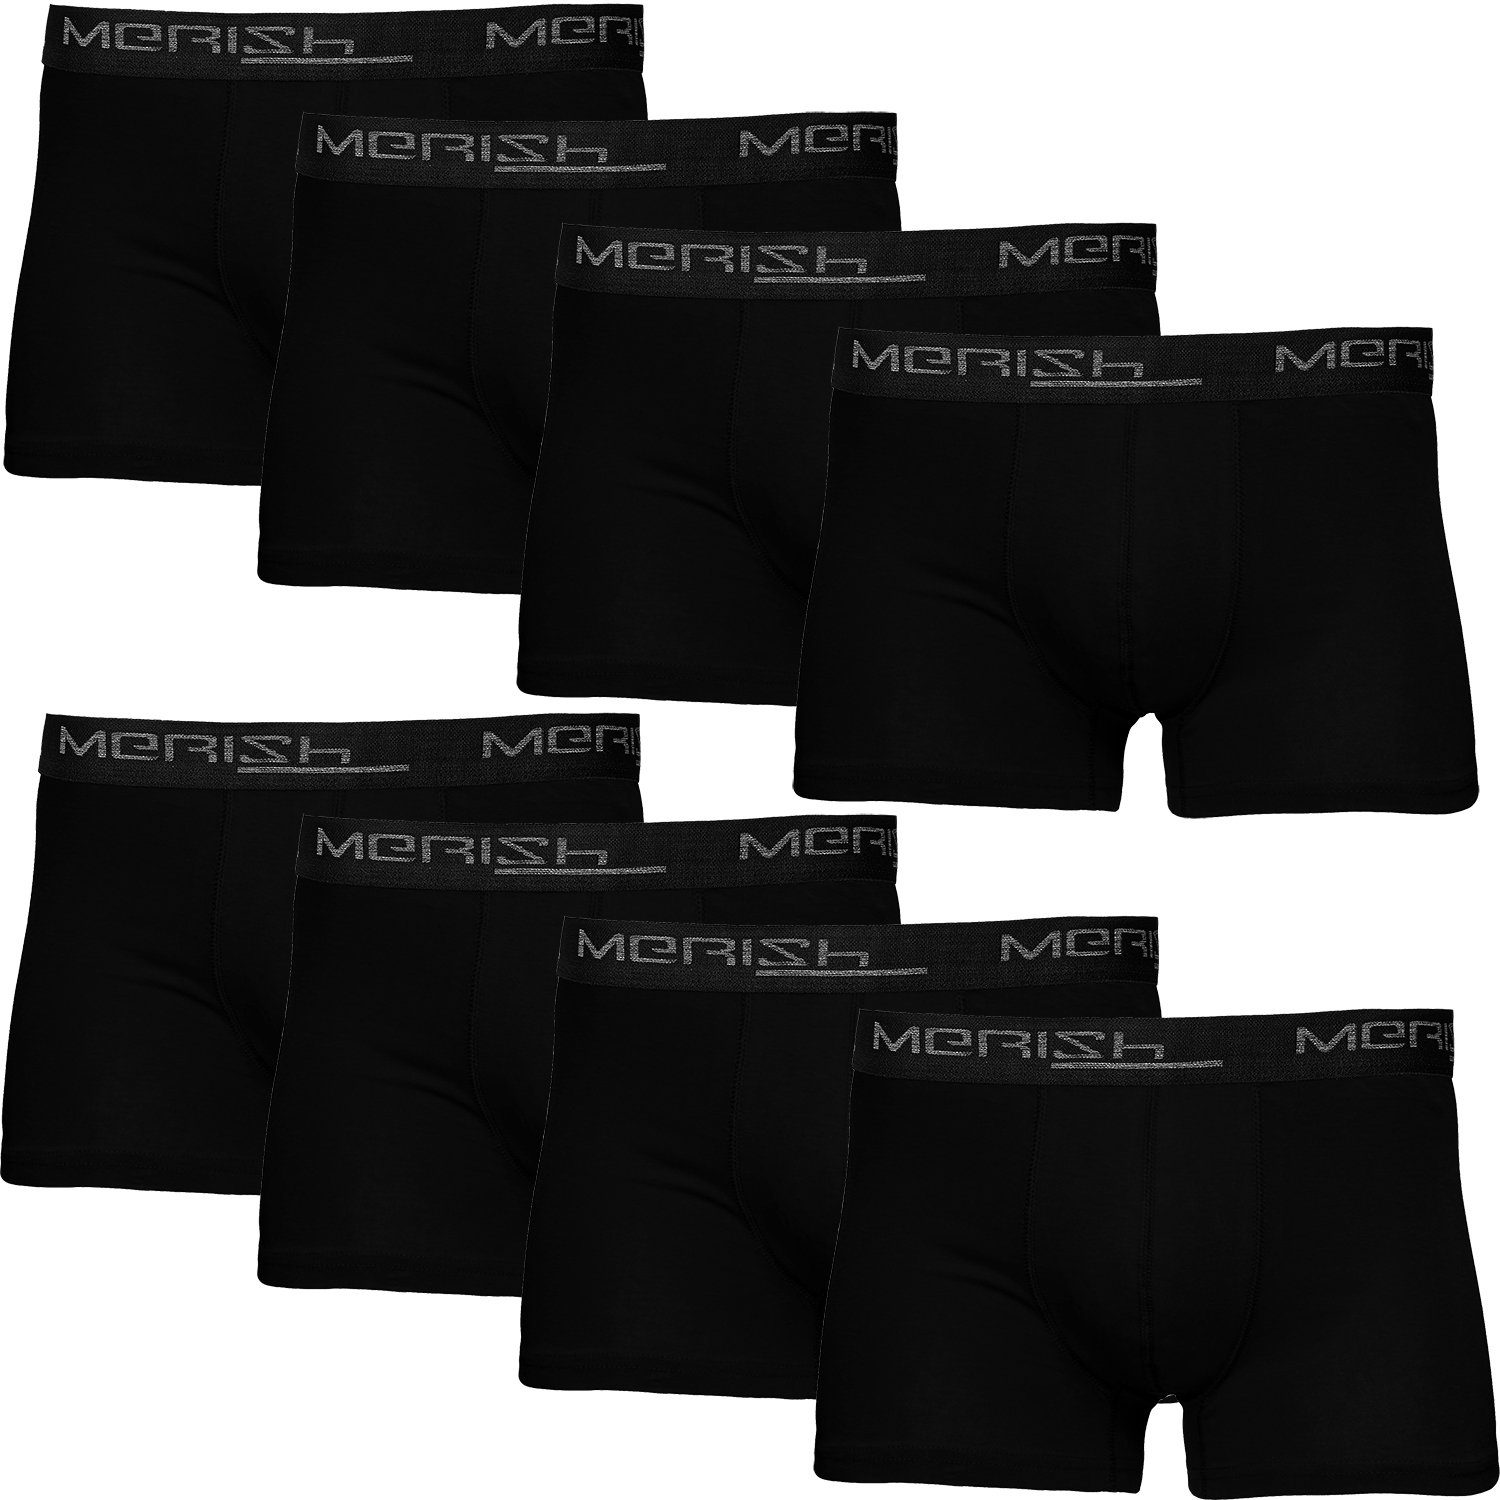 MERISH Boxershorts Herren Männer Unterhosen Baumwolle Premium Qualität perfekte Passform (Vorteilspack, 8er-Pack) S - 7XL 216i-schwarz